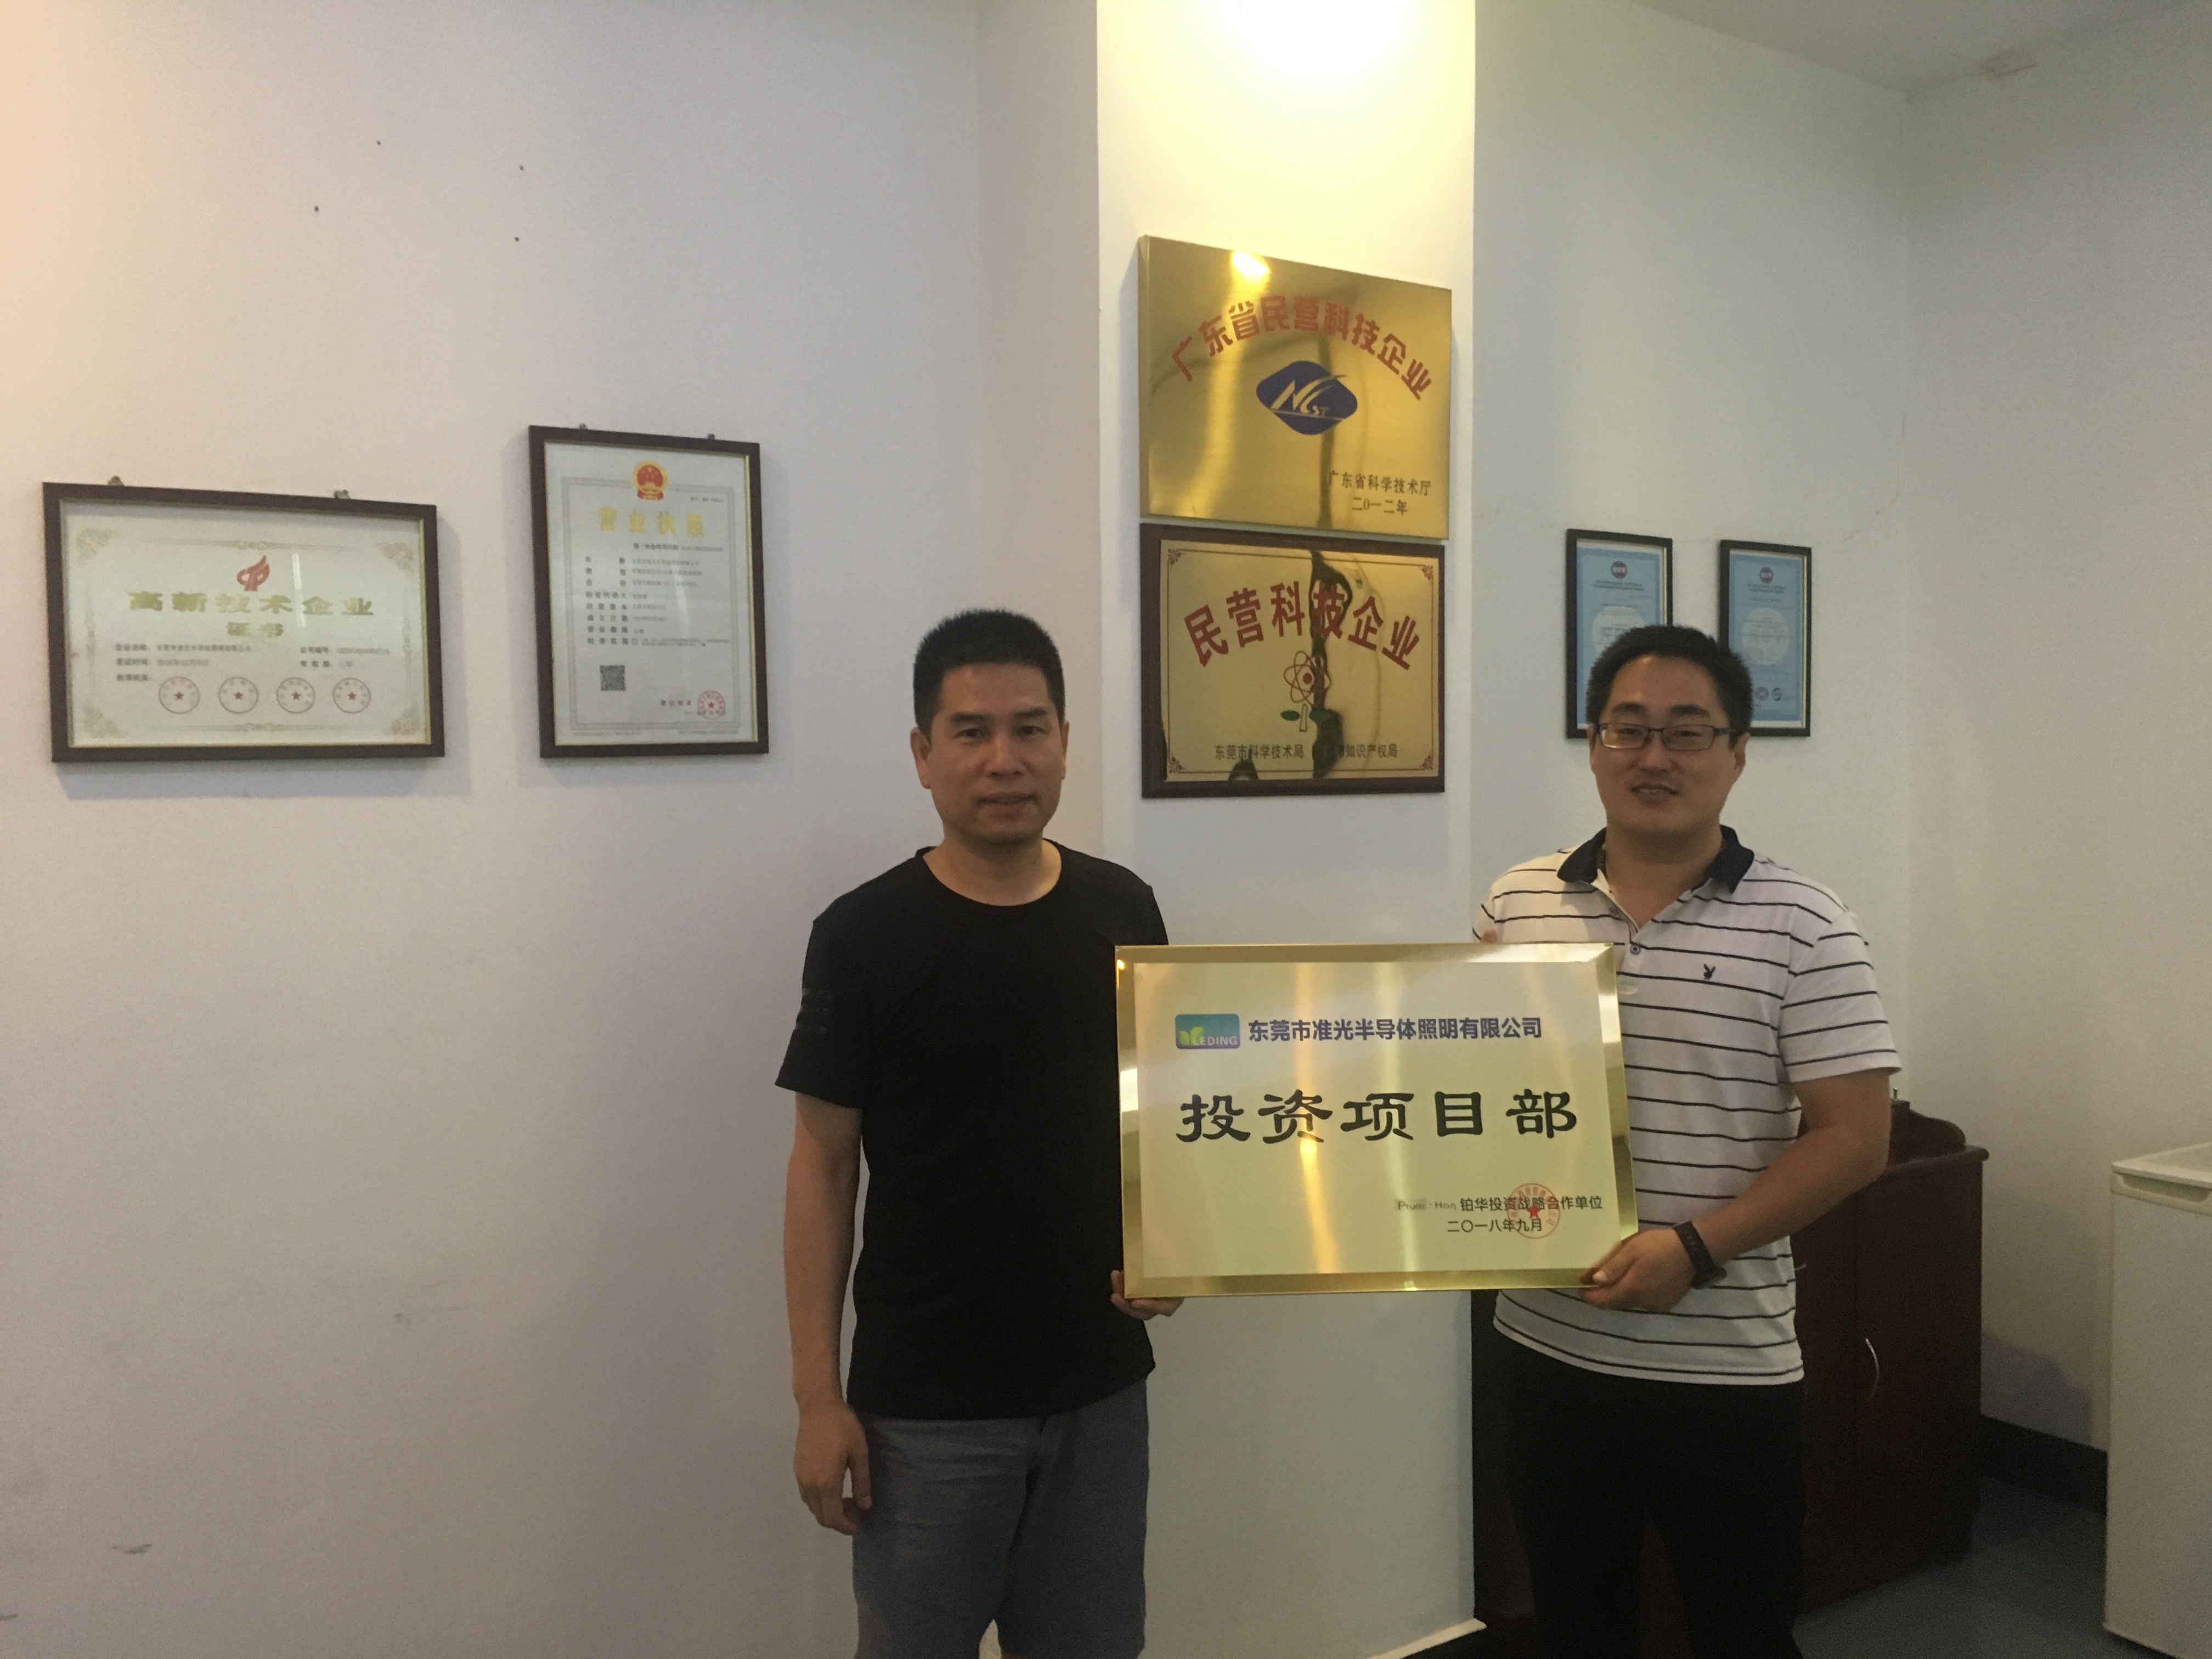 热烈祝贺东莞市准光半导体照明有限公司投资项目部成立并运营